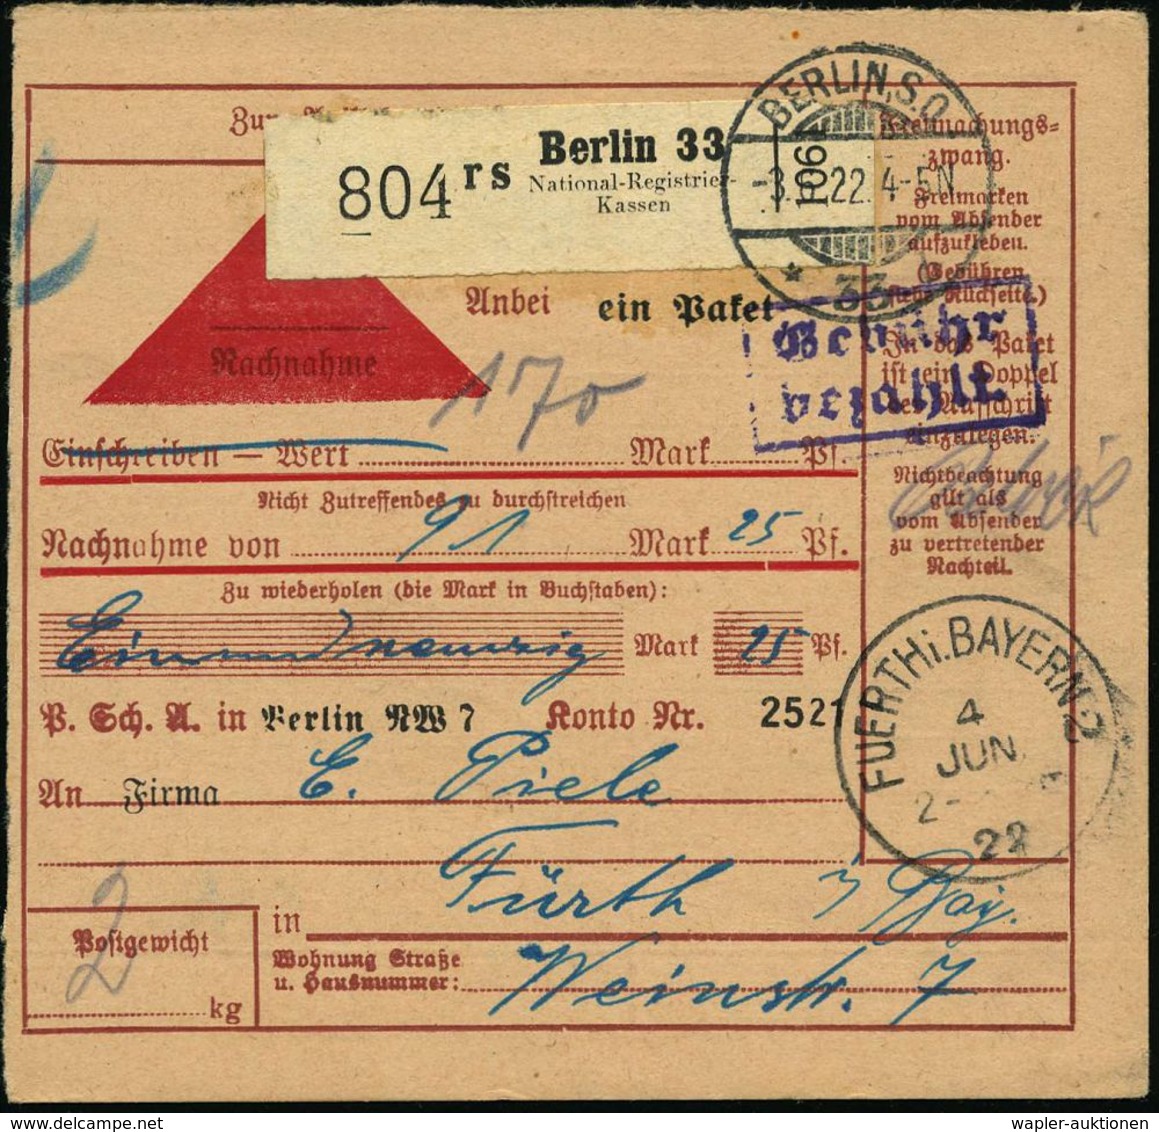 NUMISPHILATELIE / GELDSCHEINE / MÜNZEN : Berlin 33/ Rs/ National-Registrier-/ Kassen 1922 (3.6.) Selbstbucher-Paketzette - Unclassified